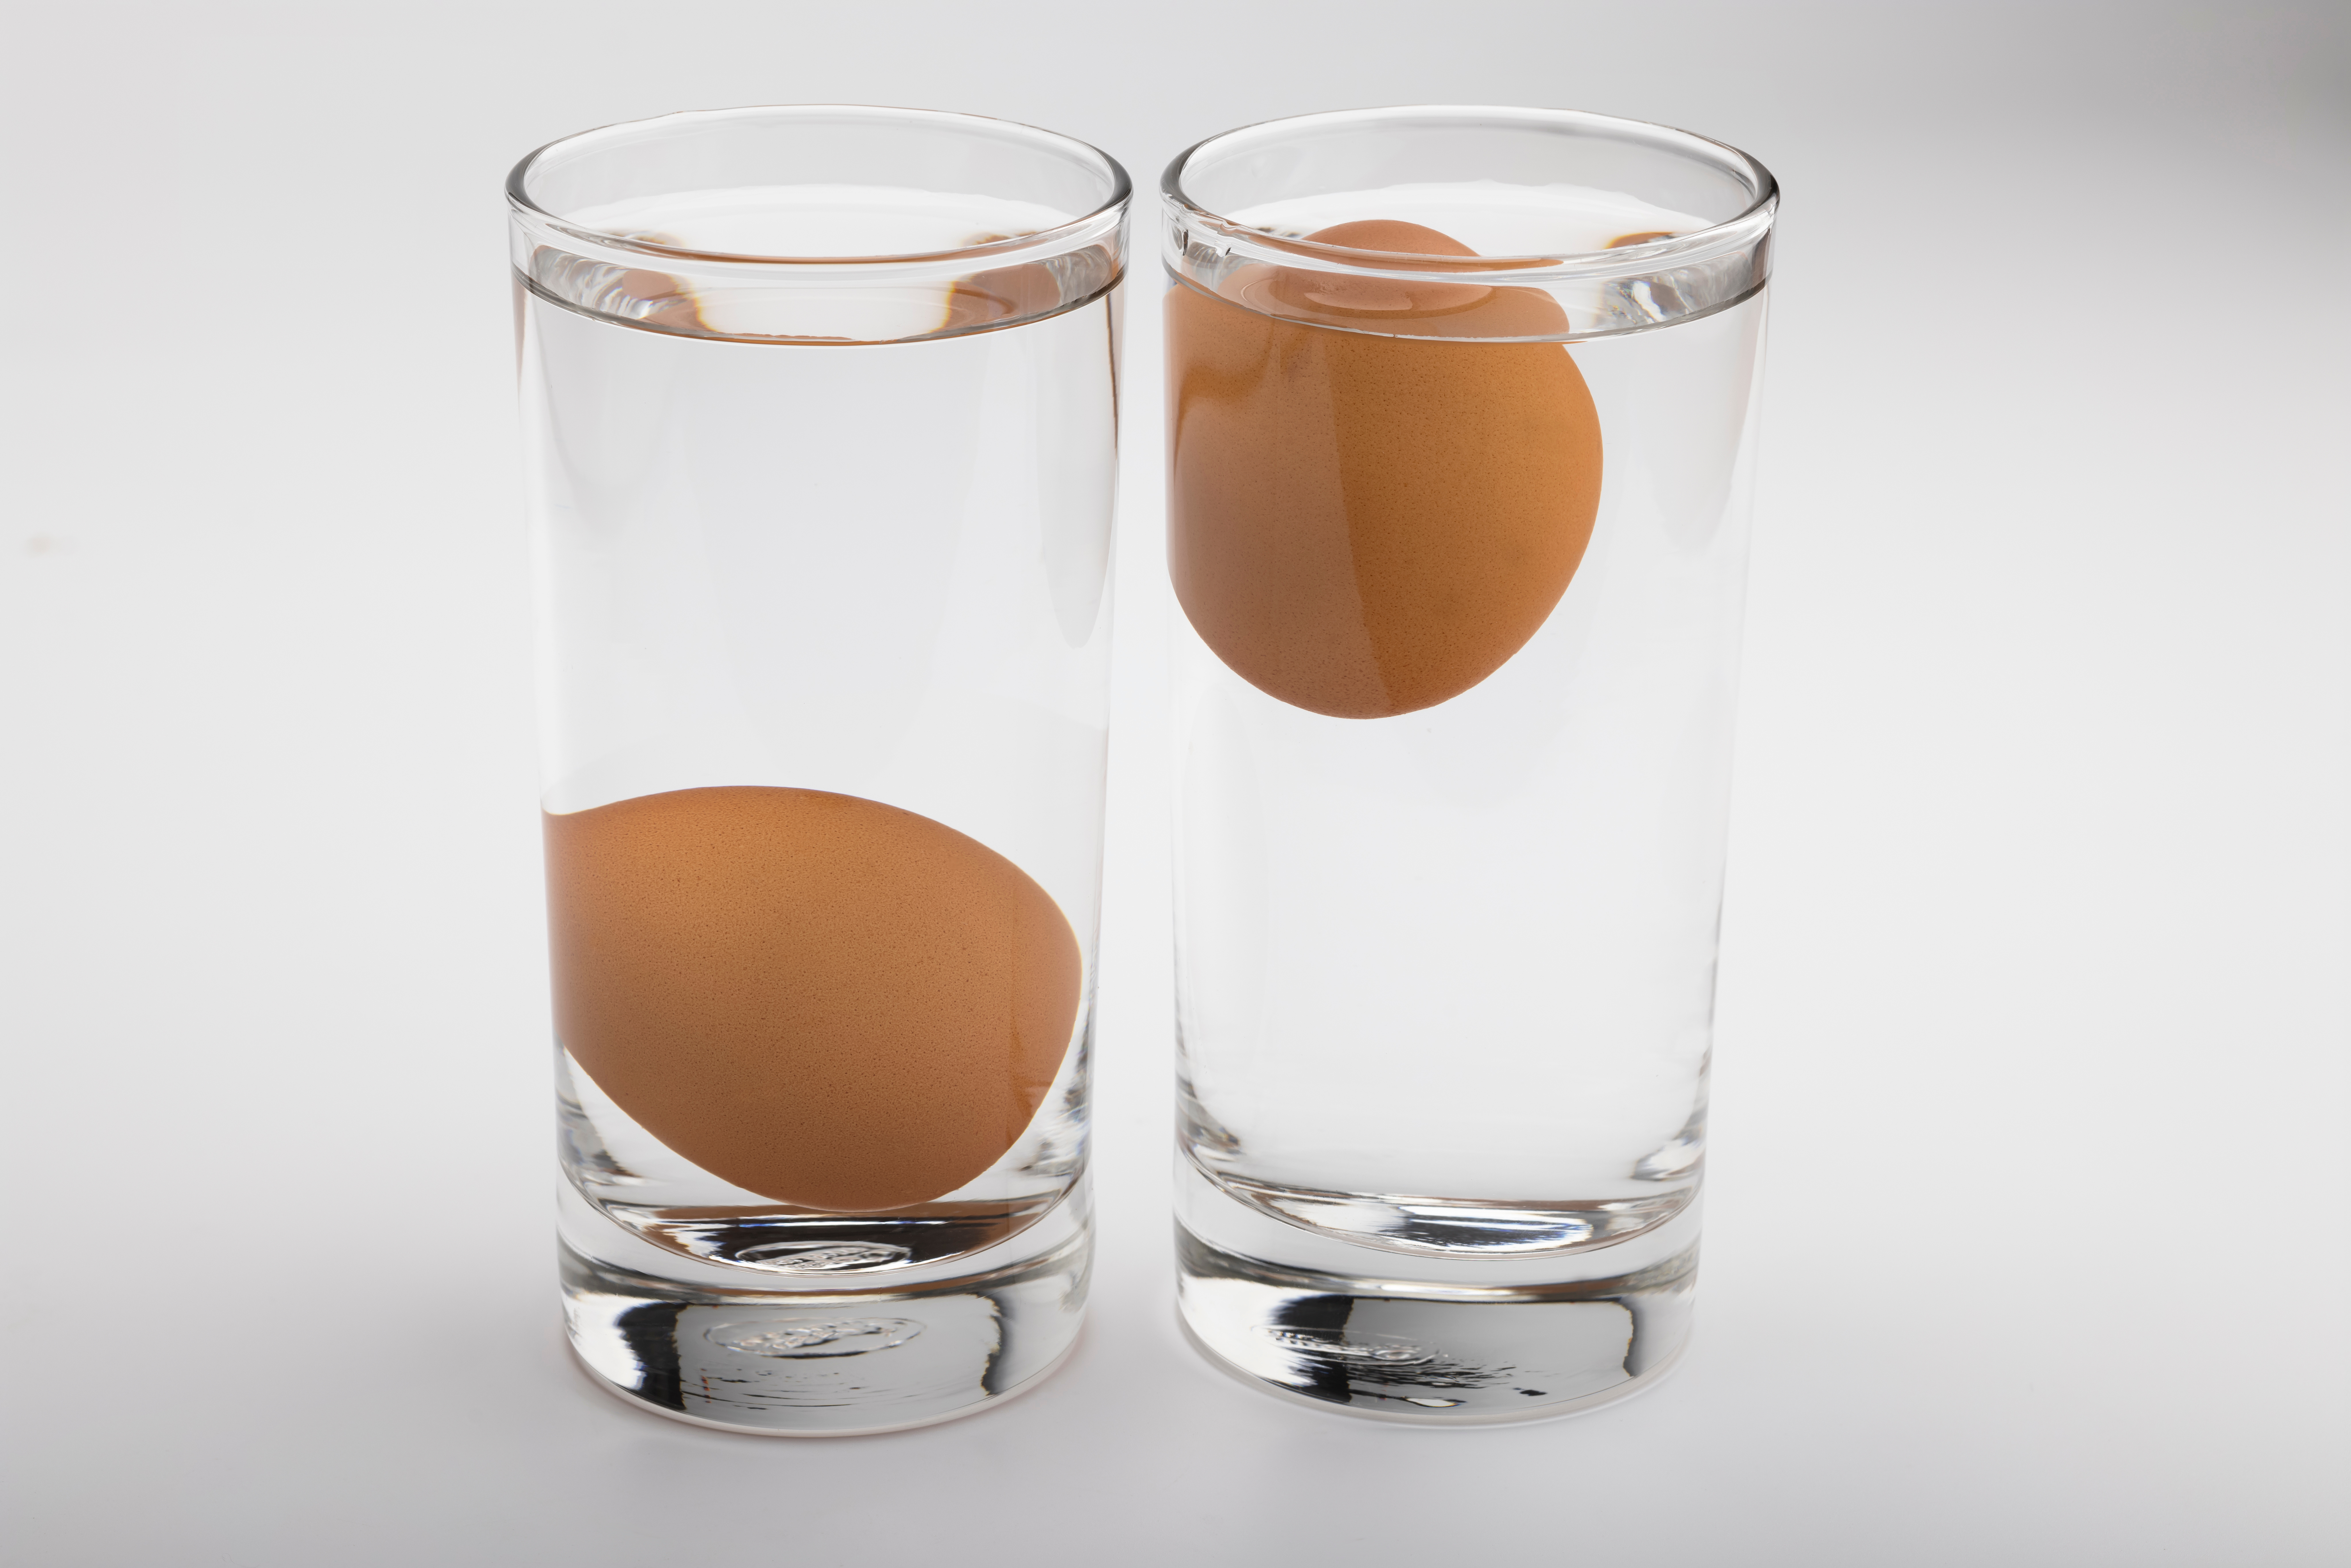 Zwei mit Wasser gefüllte Gläser. In einem liegt das Ei auf dem Boden des Glases, im anderen schwimmt es an der Oberfläche.